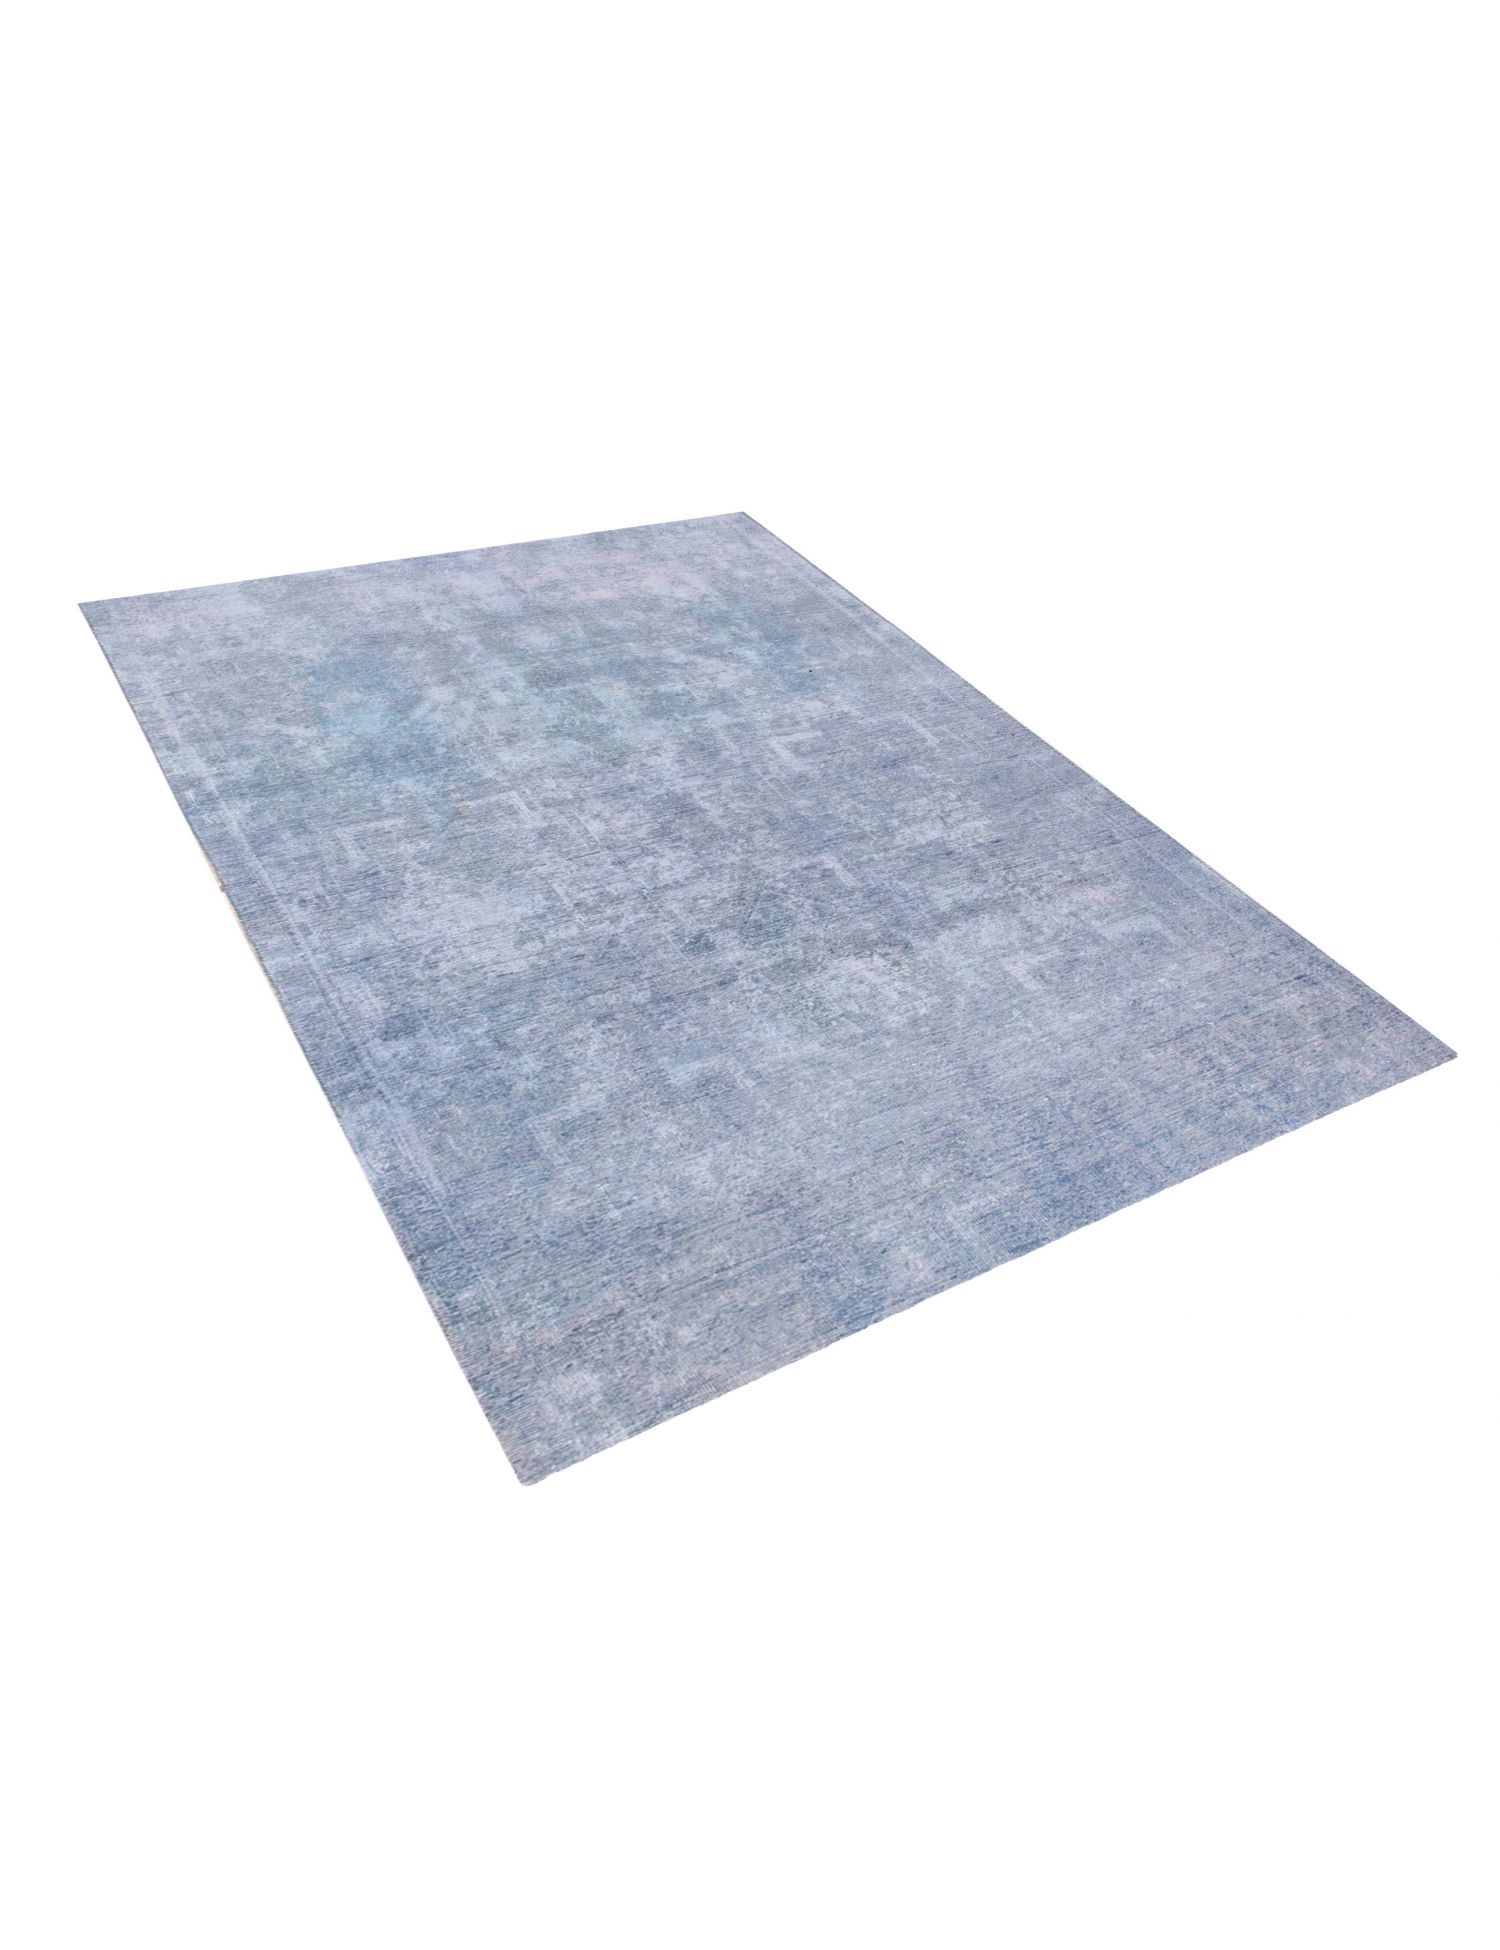 Persischer vintage teppich  blau <br/>250 x 194 cm